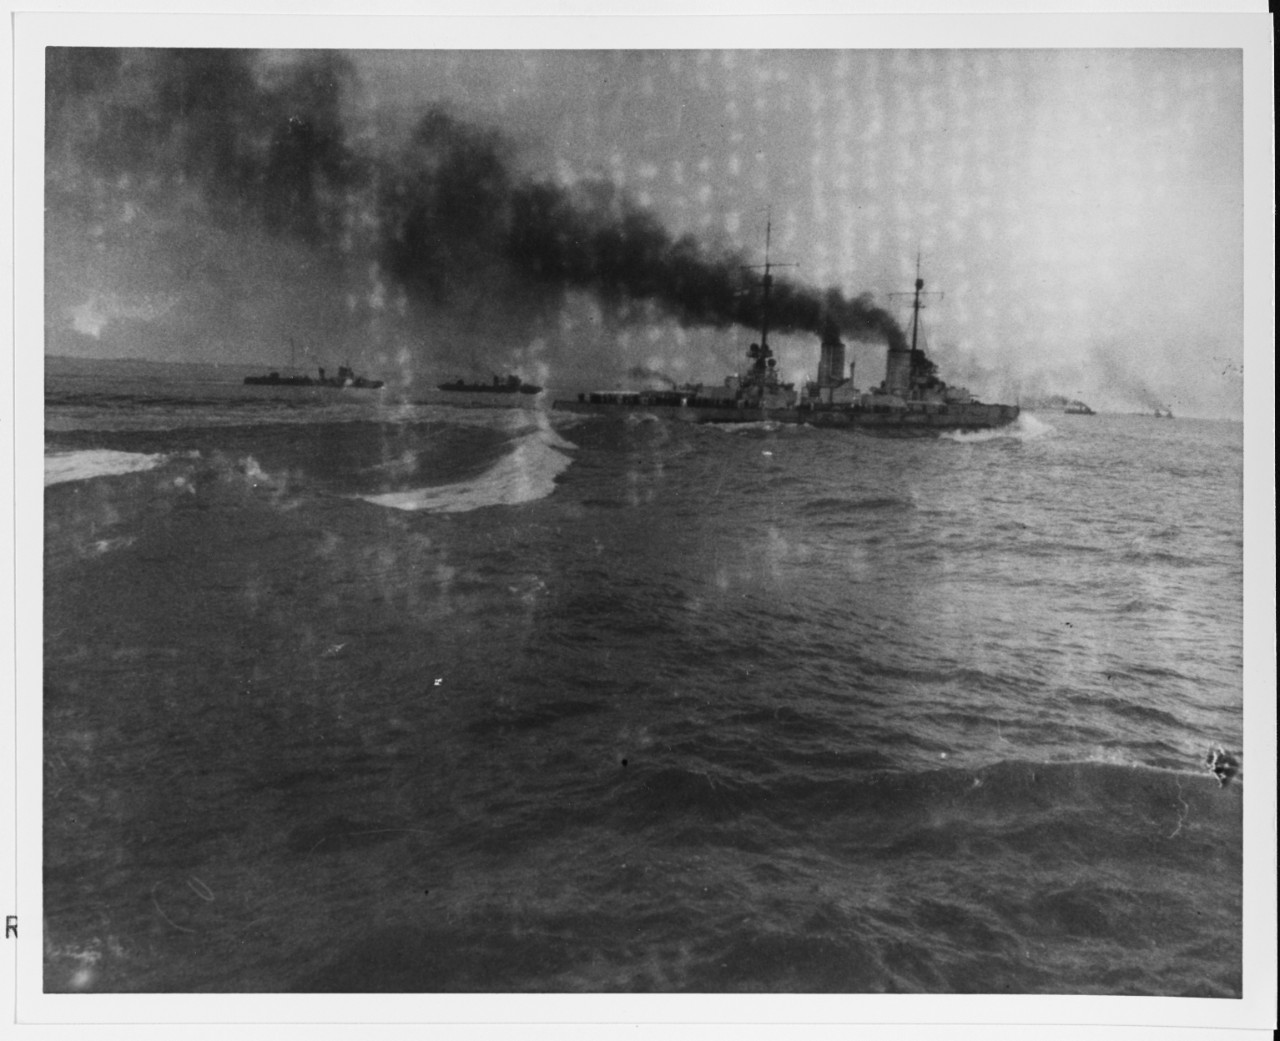 VON DER TANN (German Battle cruiser, 1909-1919)